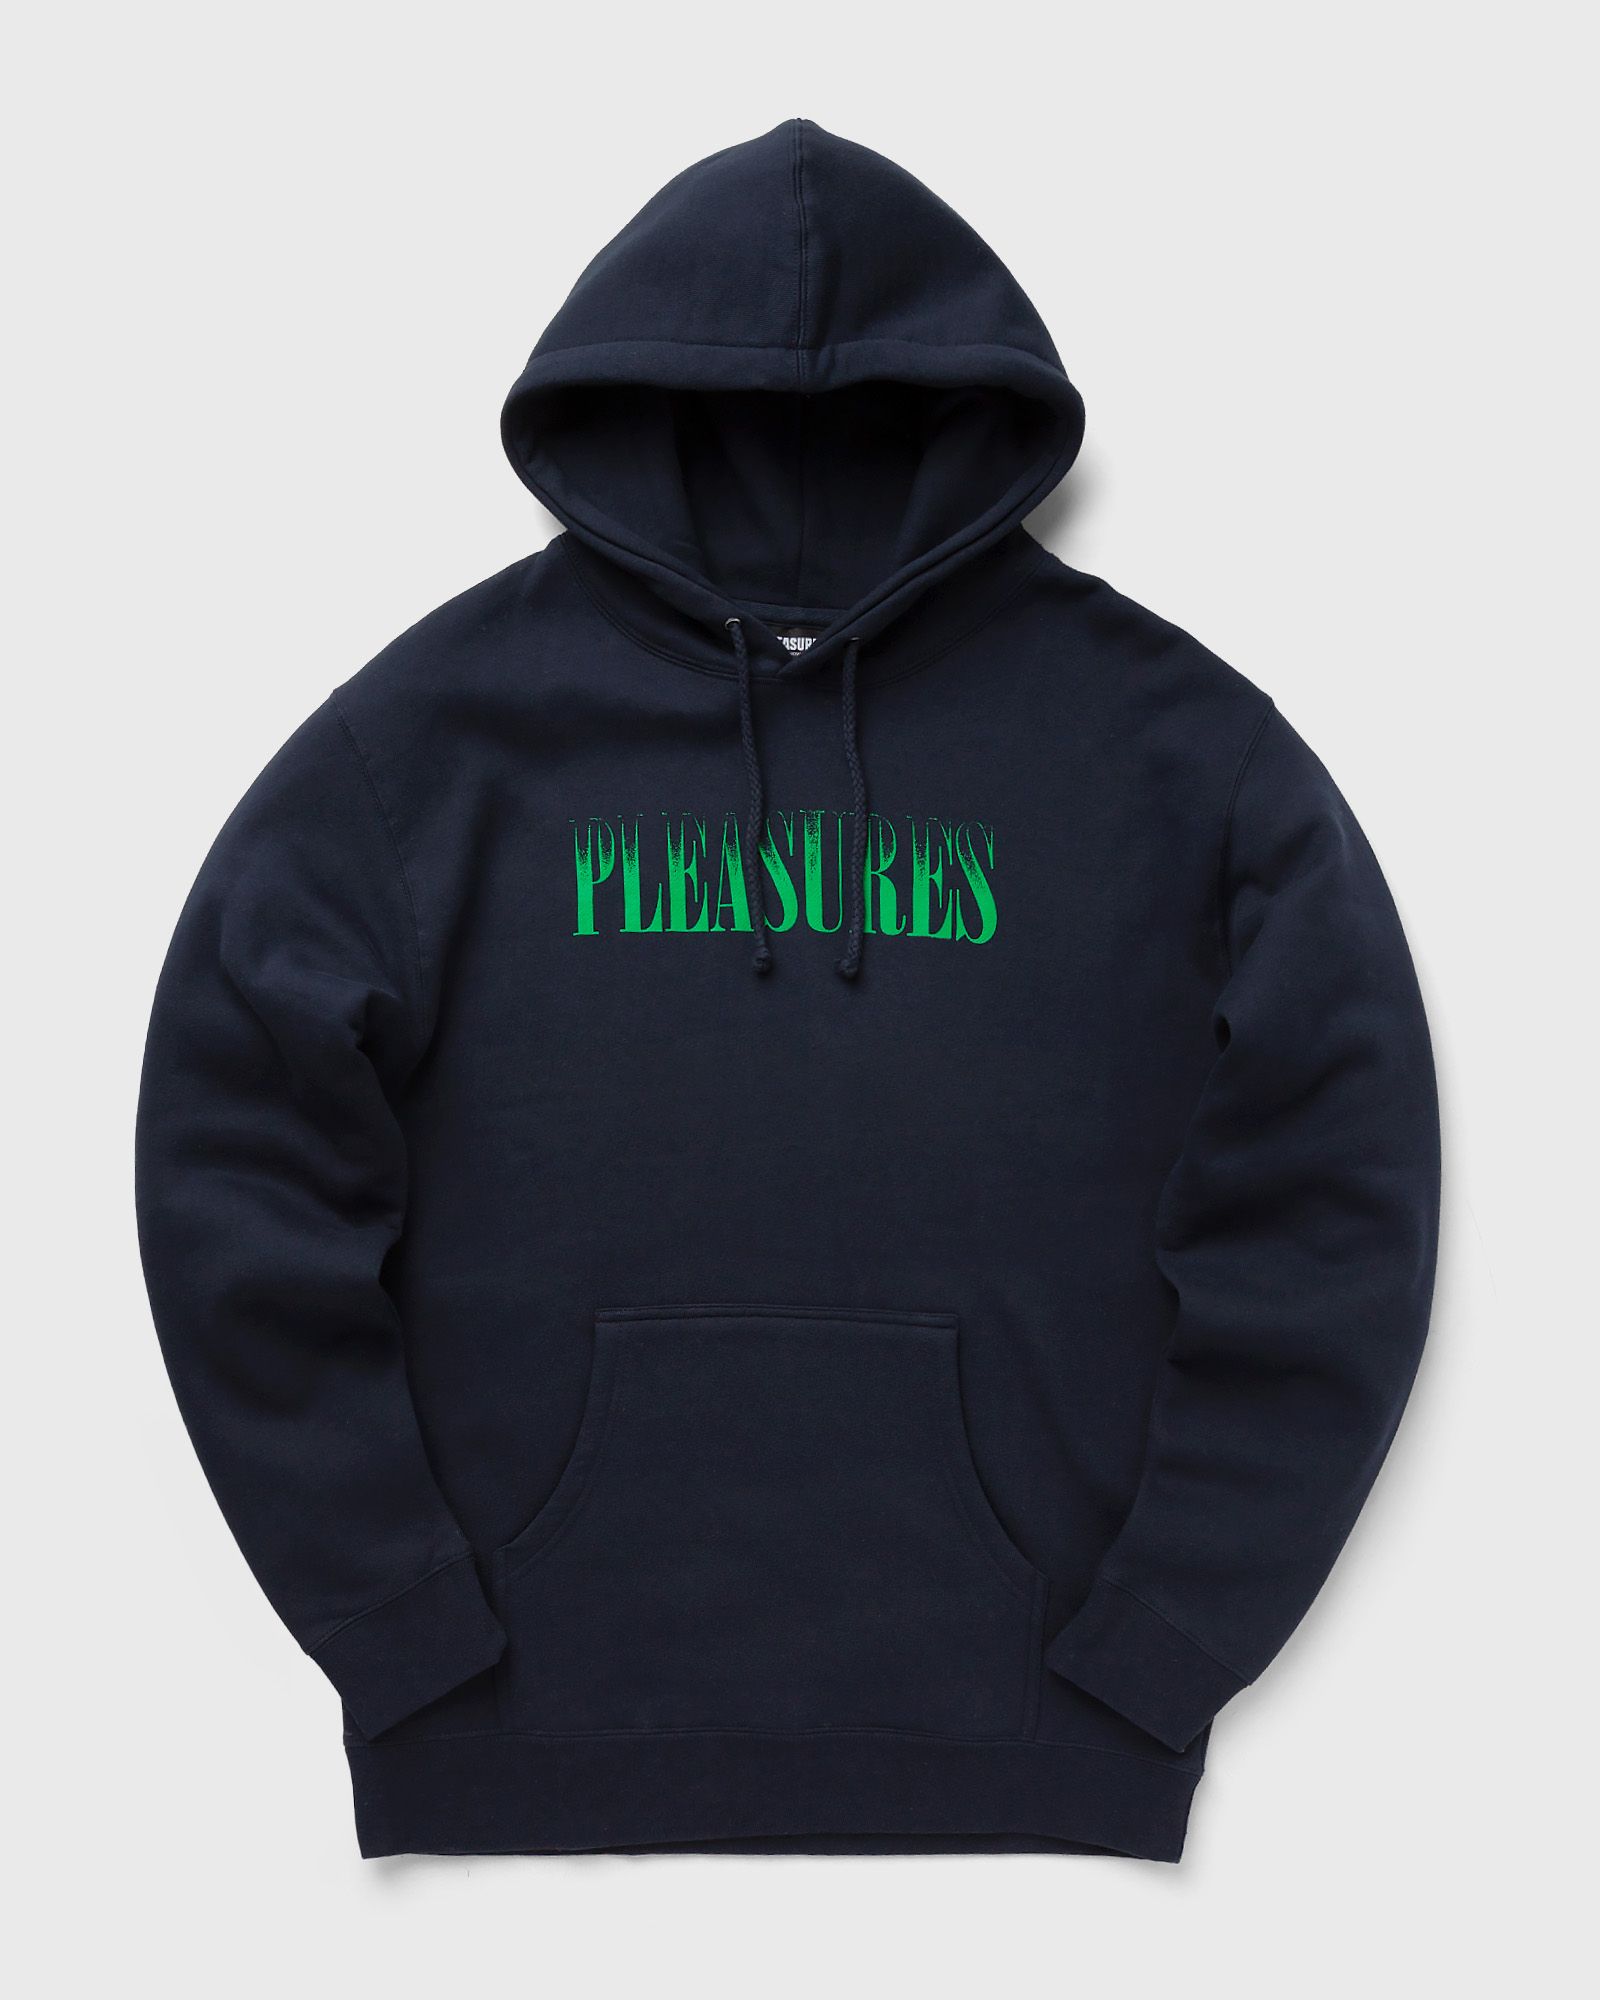 Pleasures - crumble hoodie men hoodies blue in größe:xl